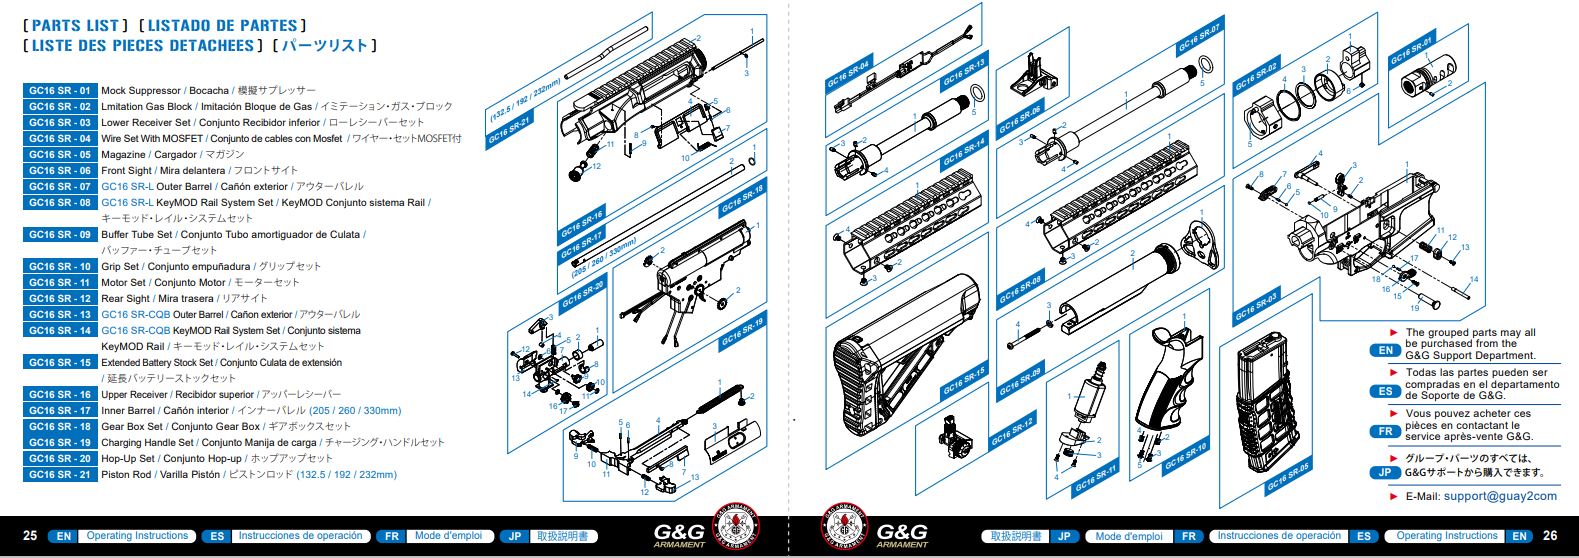 Spare Part GC16 SR-09 #3 - Part for CM16 SR/GC16 SR stock tube - G&G